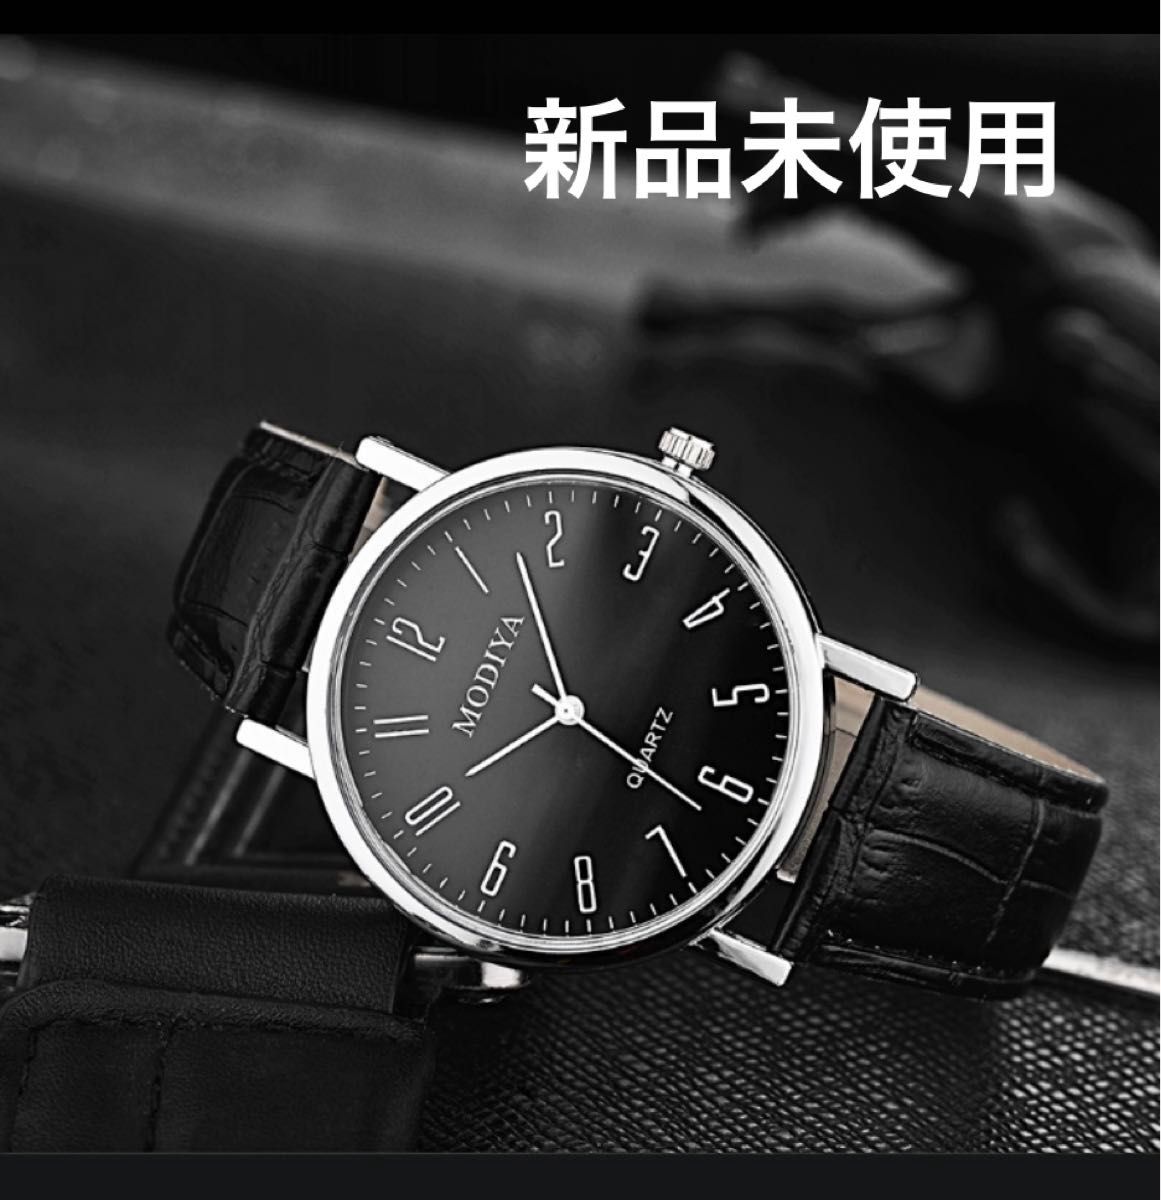 ☆最終値下げ☆【630020F】腕時計 ビジネス シンプル ナンバー文字盤 ブラック×ブラック